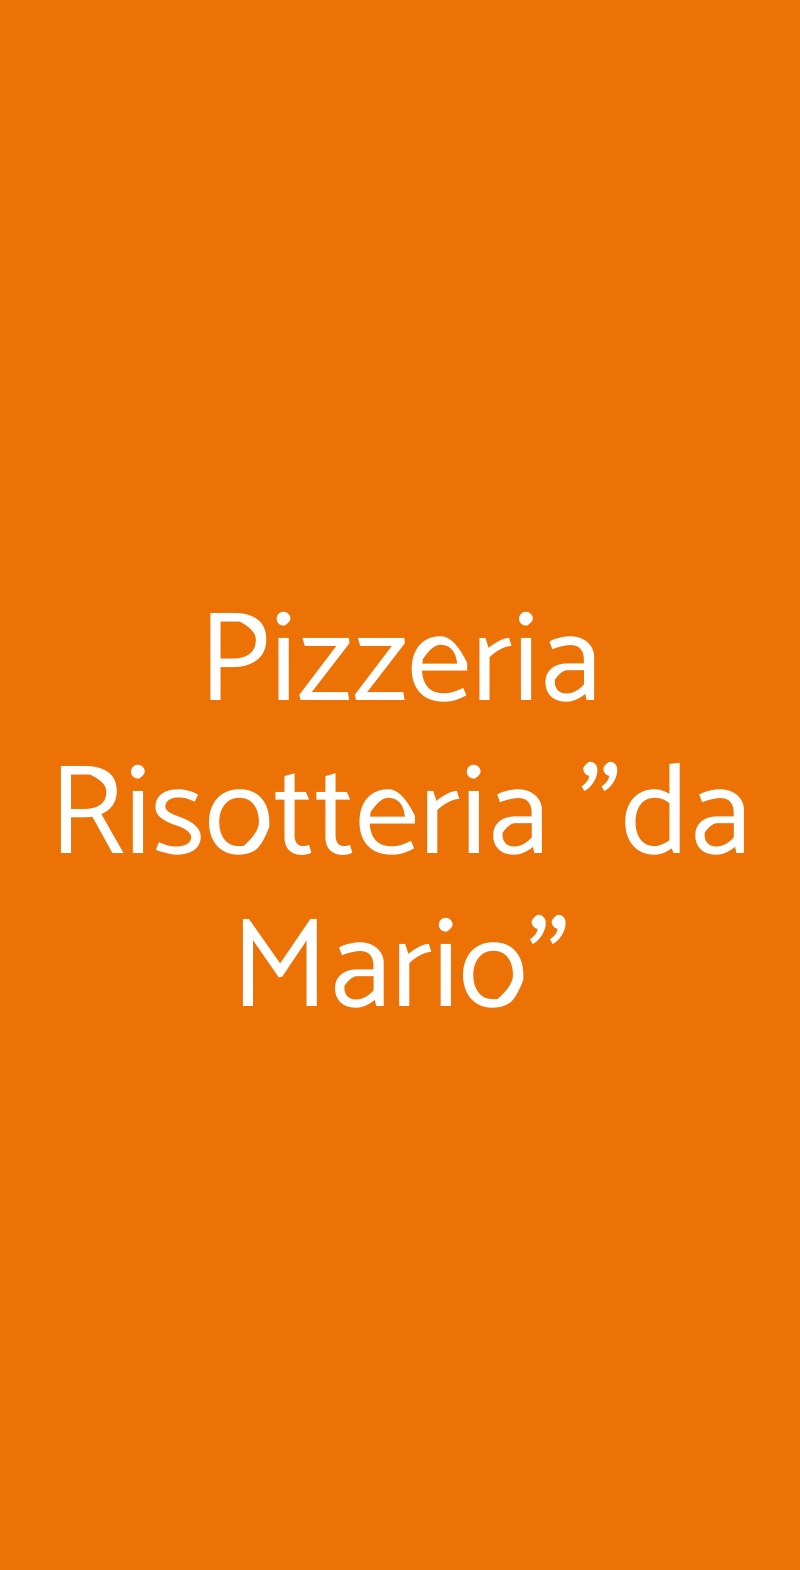 Pizzeria Risotteria "da Mario" Verona menù 1 pagina